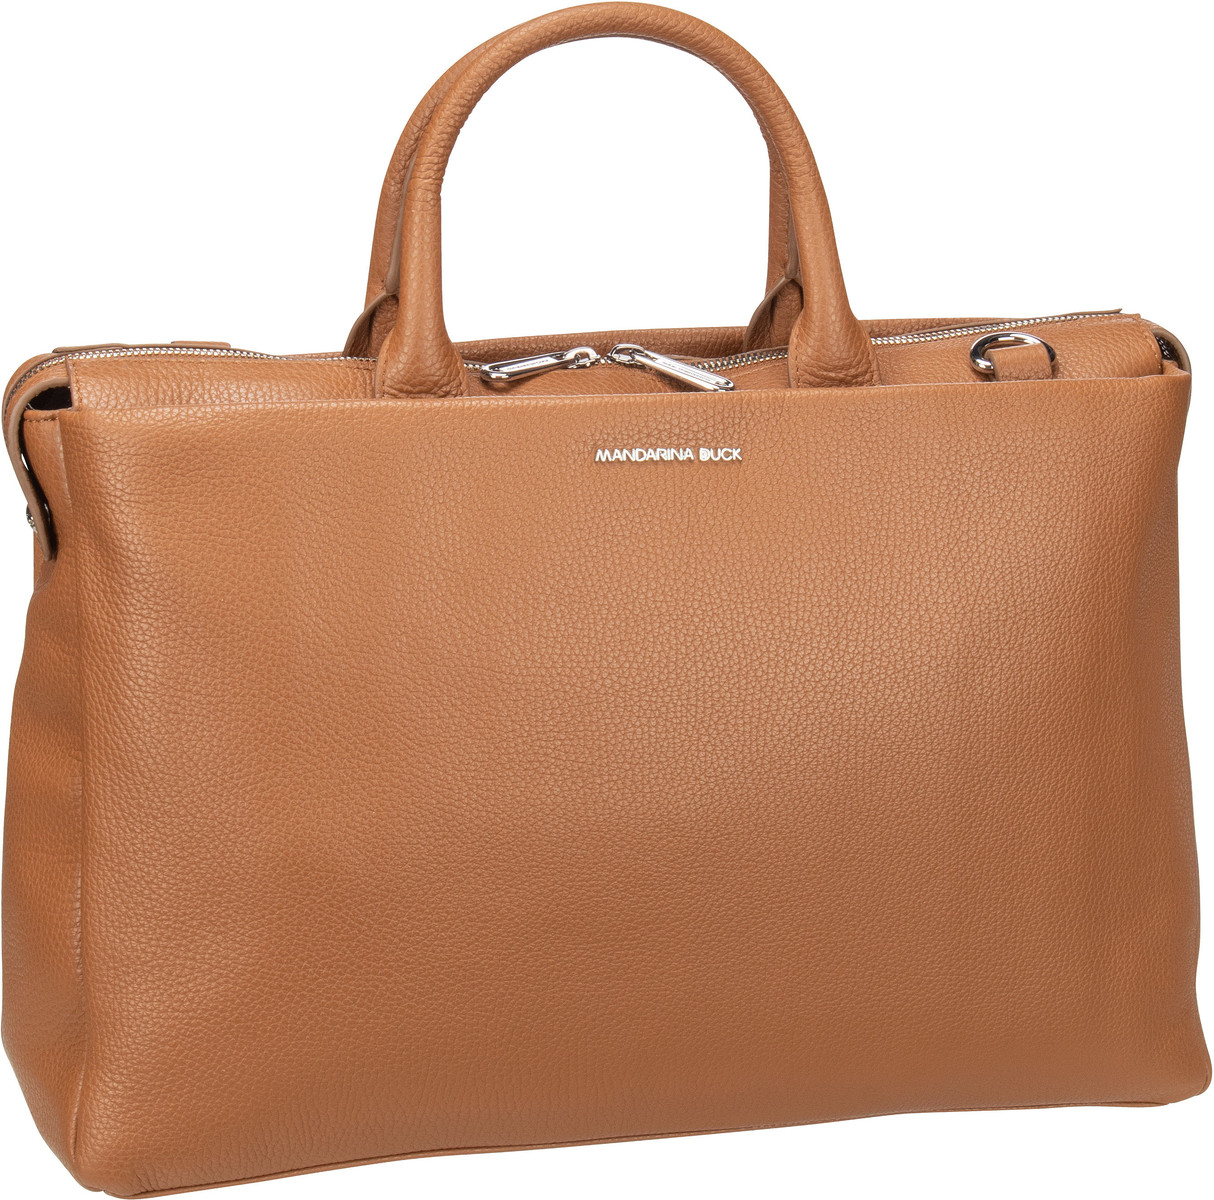 Mandarina Duck Mellow Urban Handbag MWT04  in Cognac (12 Liter), Laptoptasche